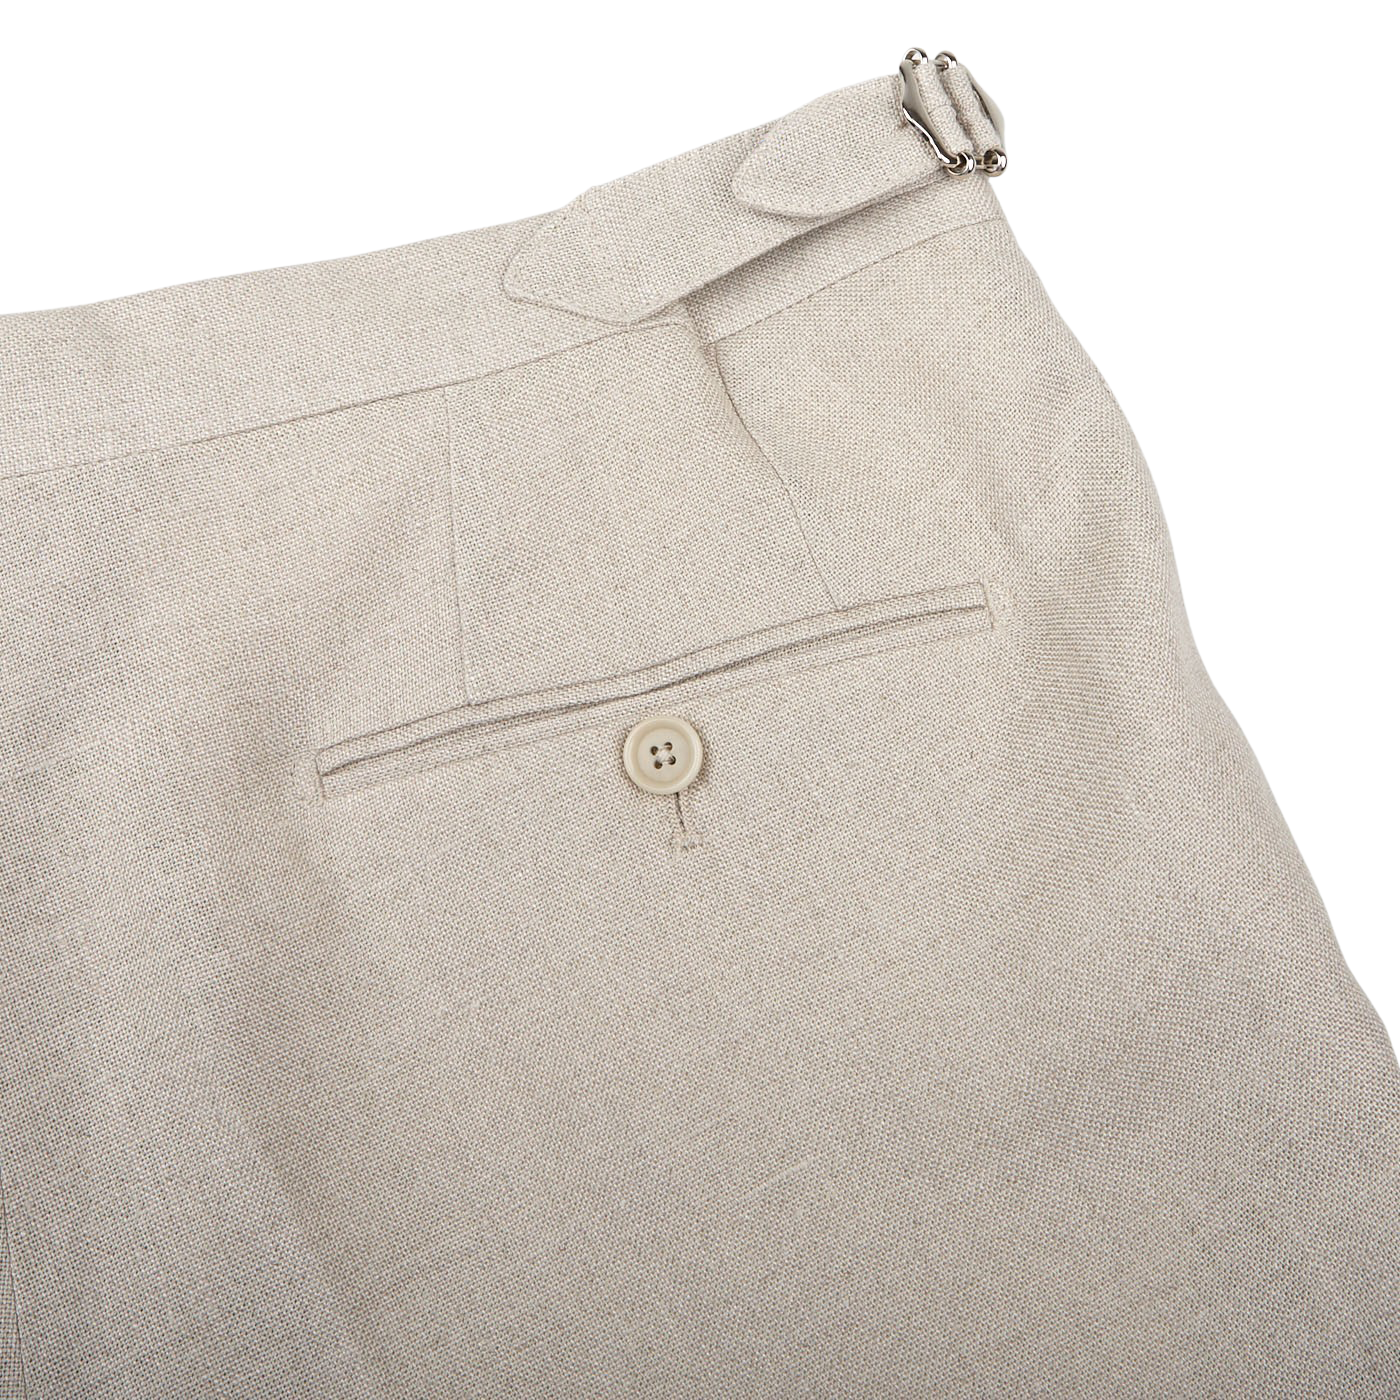 De Petrillo Sande Beige Irish Linen Modello B Trousers Pocket